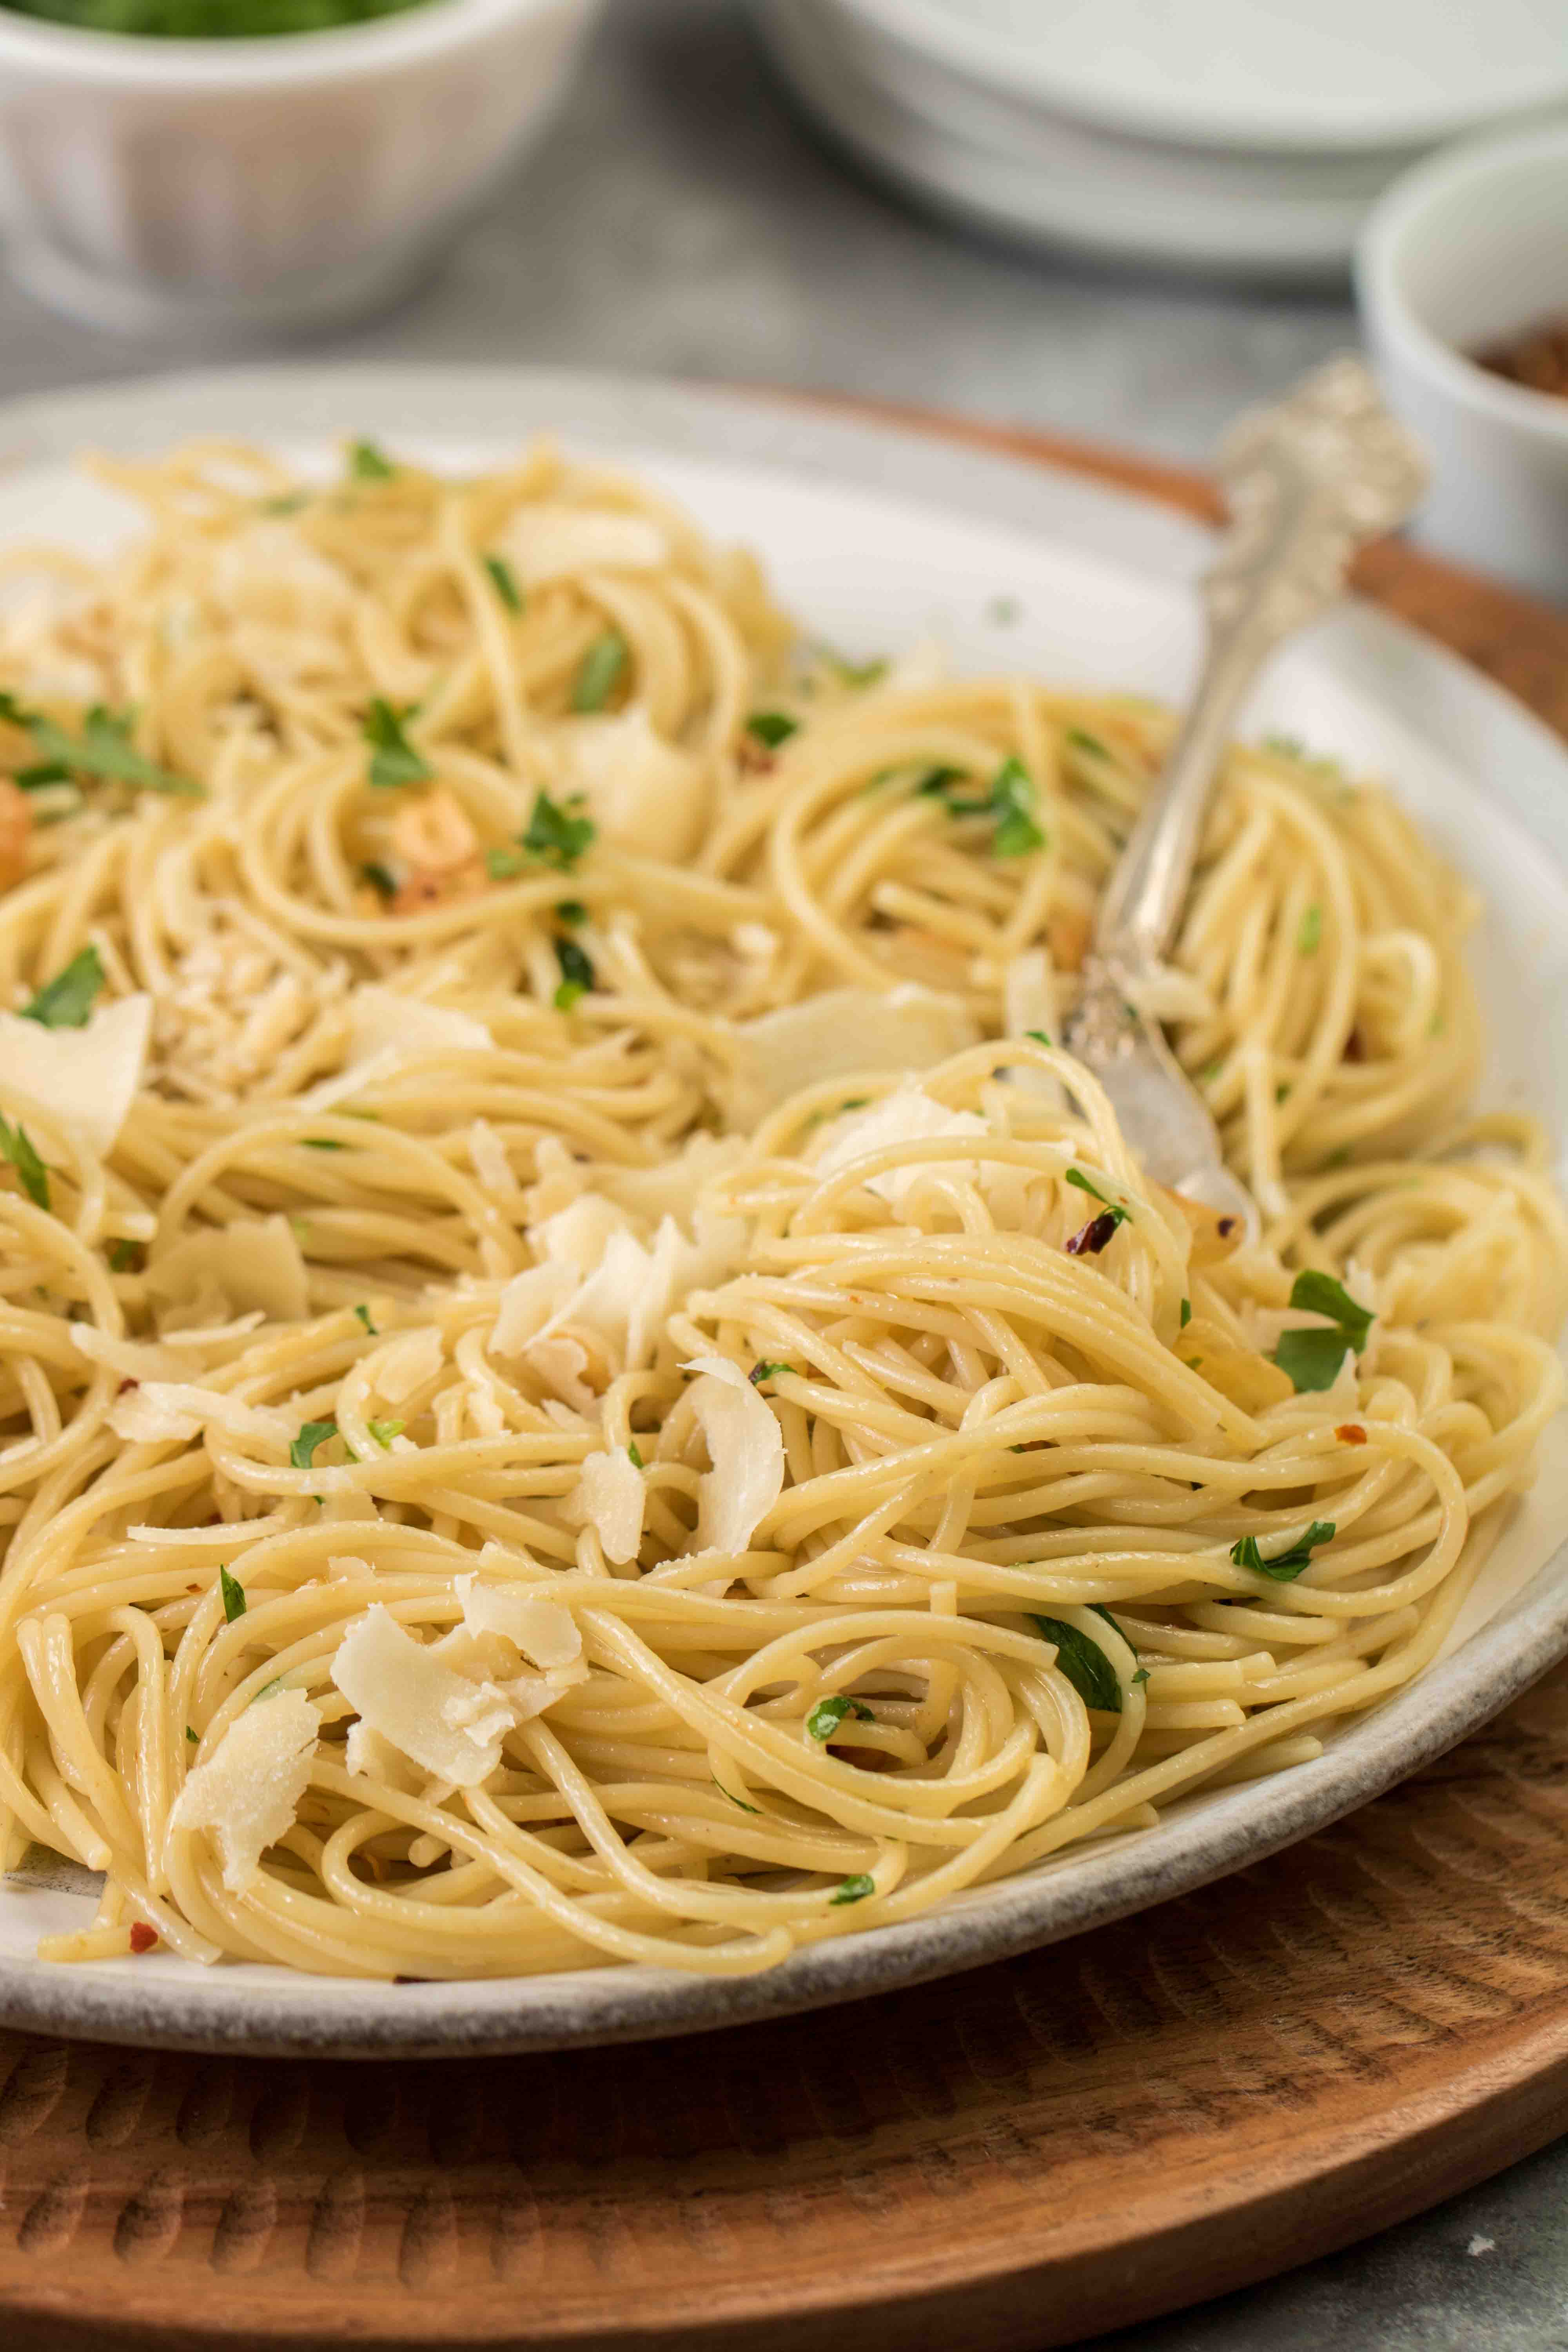 spaghetti aglio e olio with serving utensil